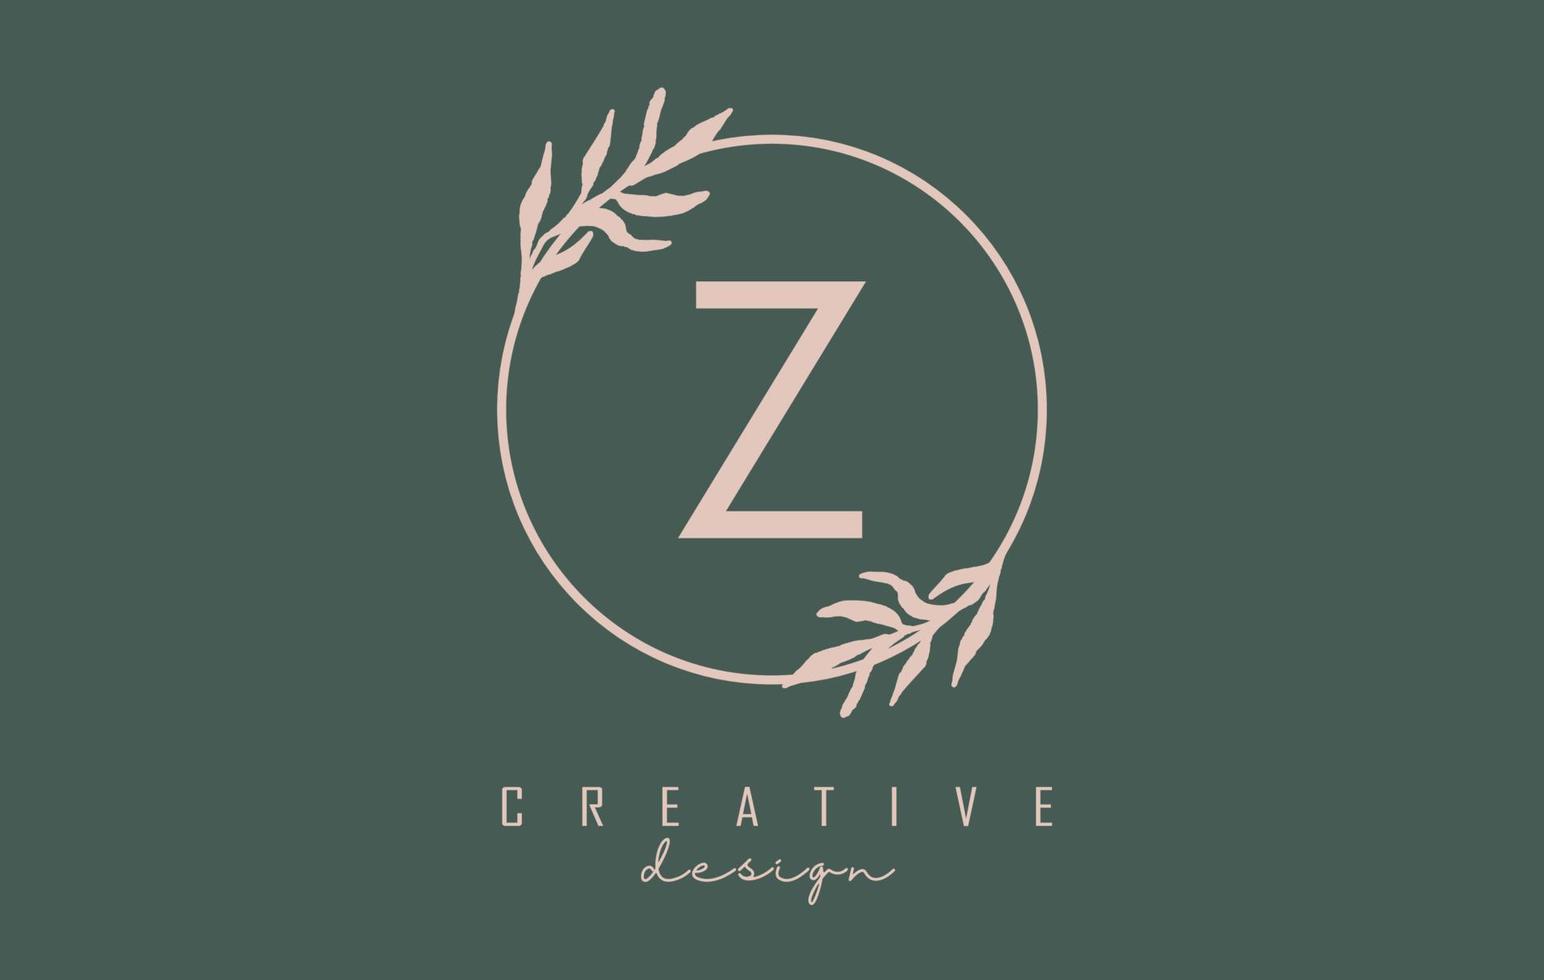 logo della lettera z con cornice circolare e design di foglie pastello. illustrazione vettoriale arrotondata con lettera z e foglia pastello.